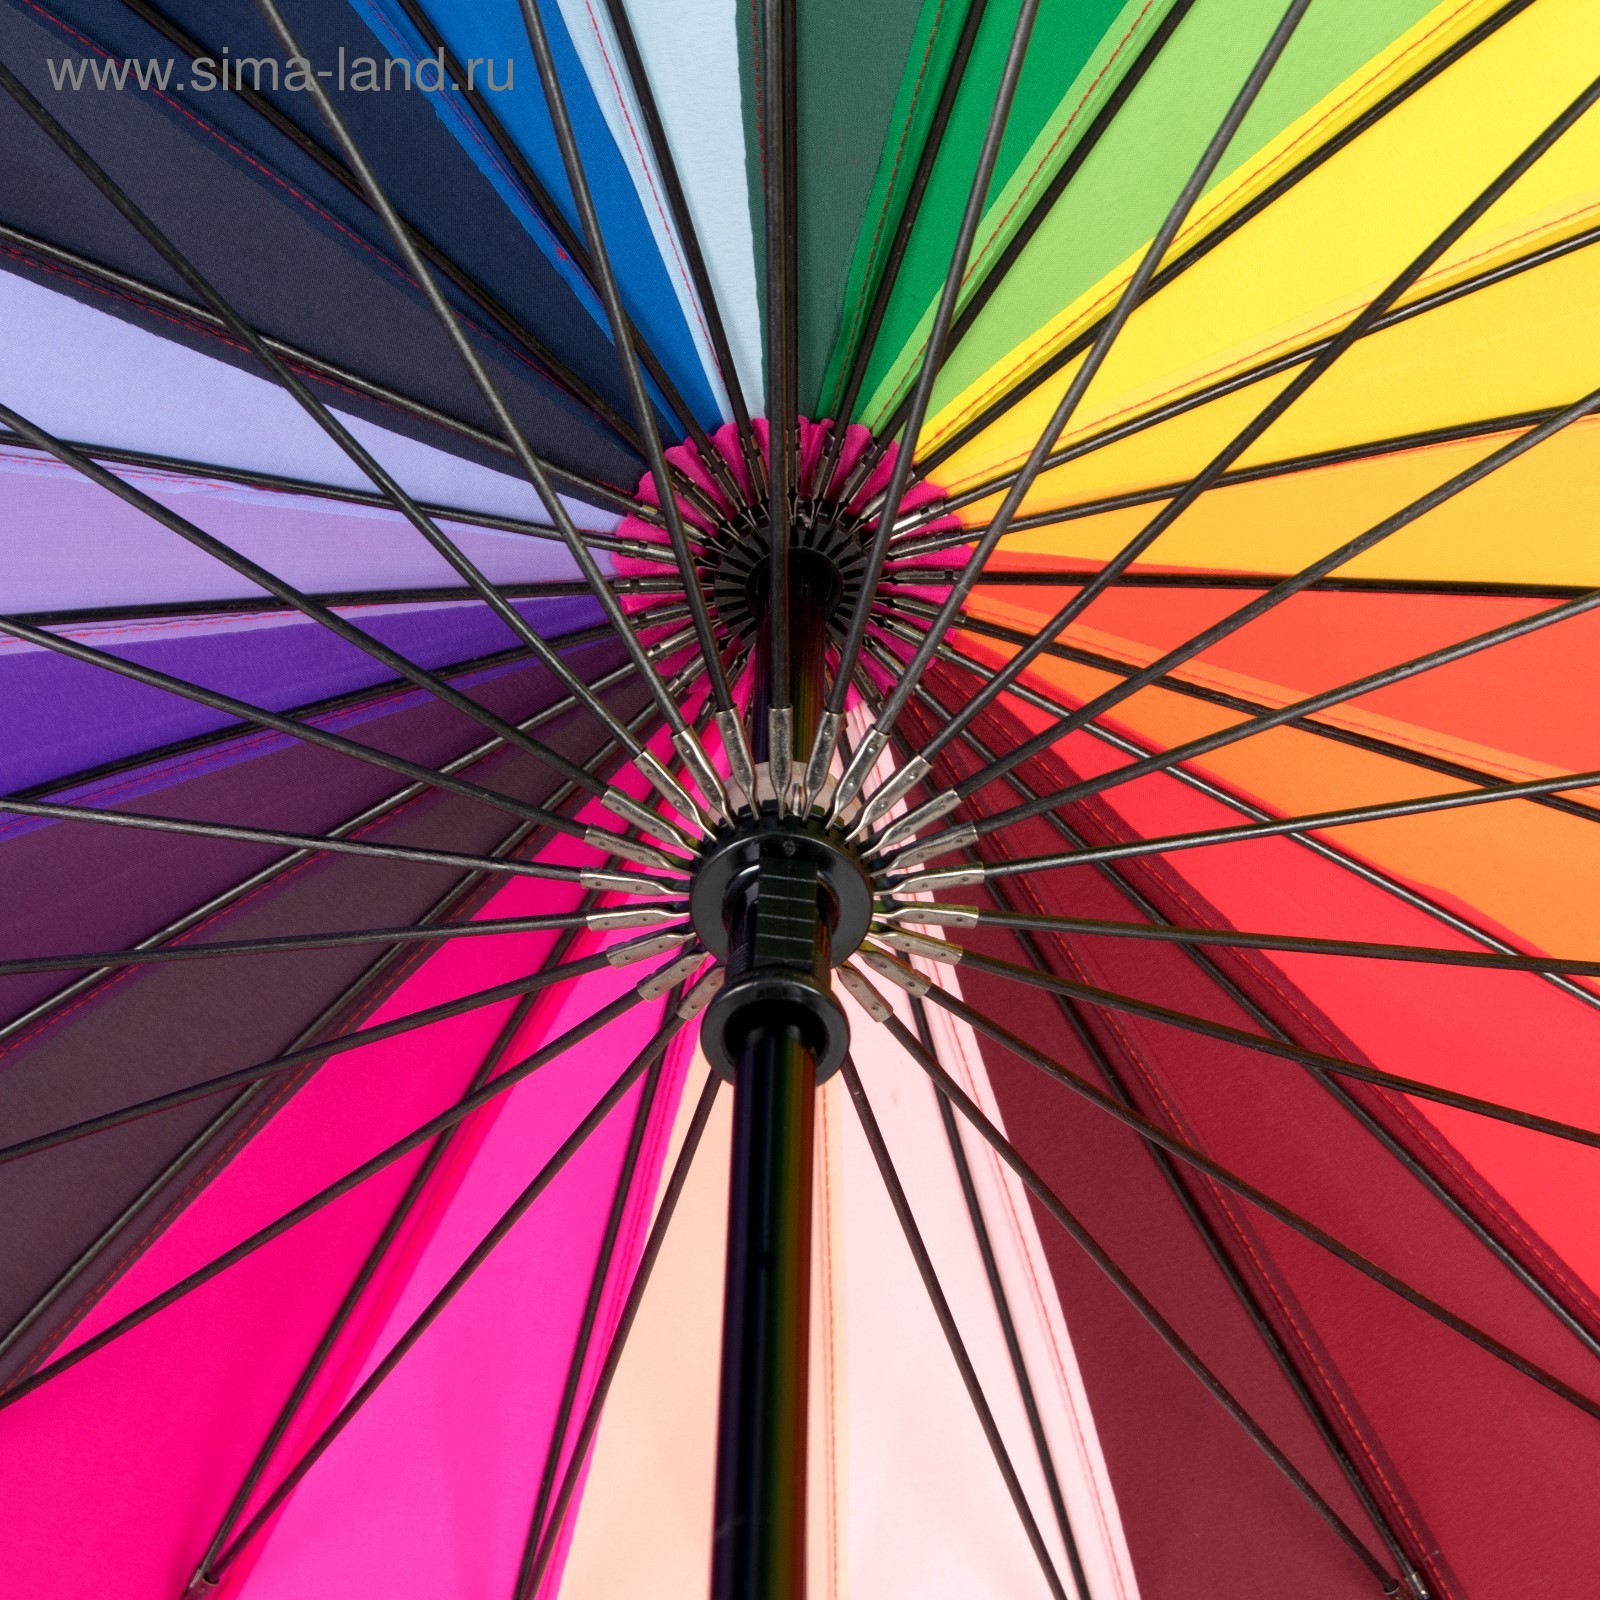 Зонт цвета радуги